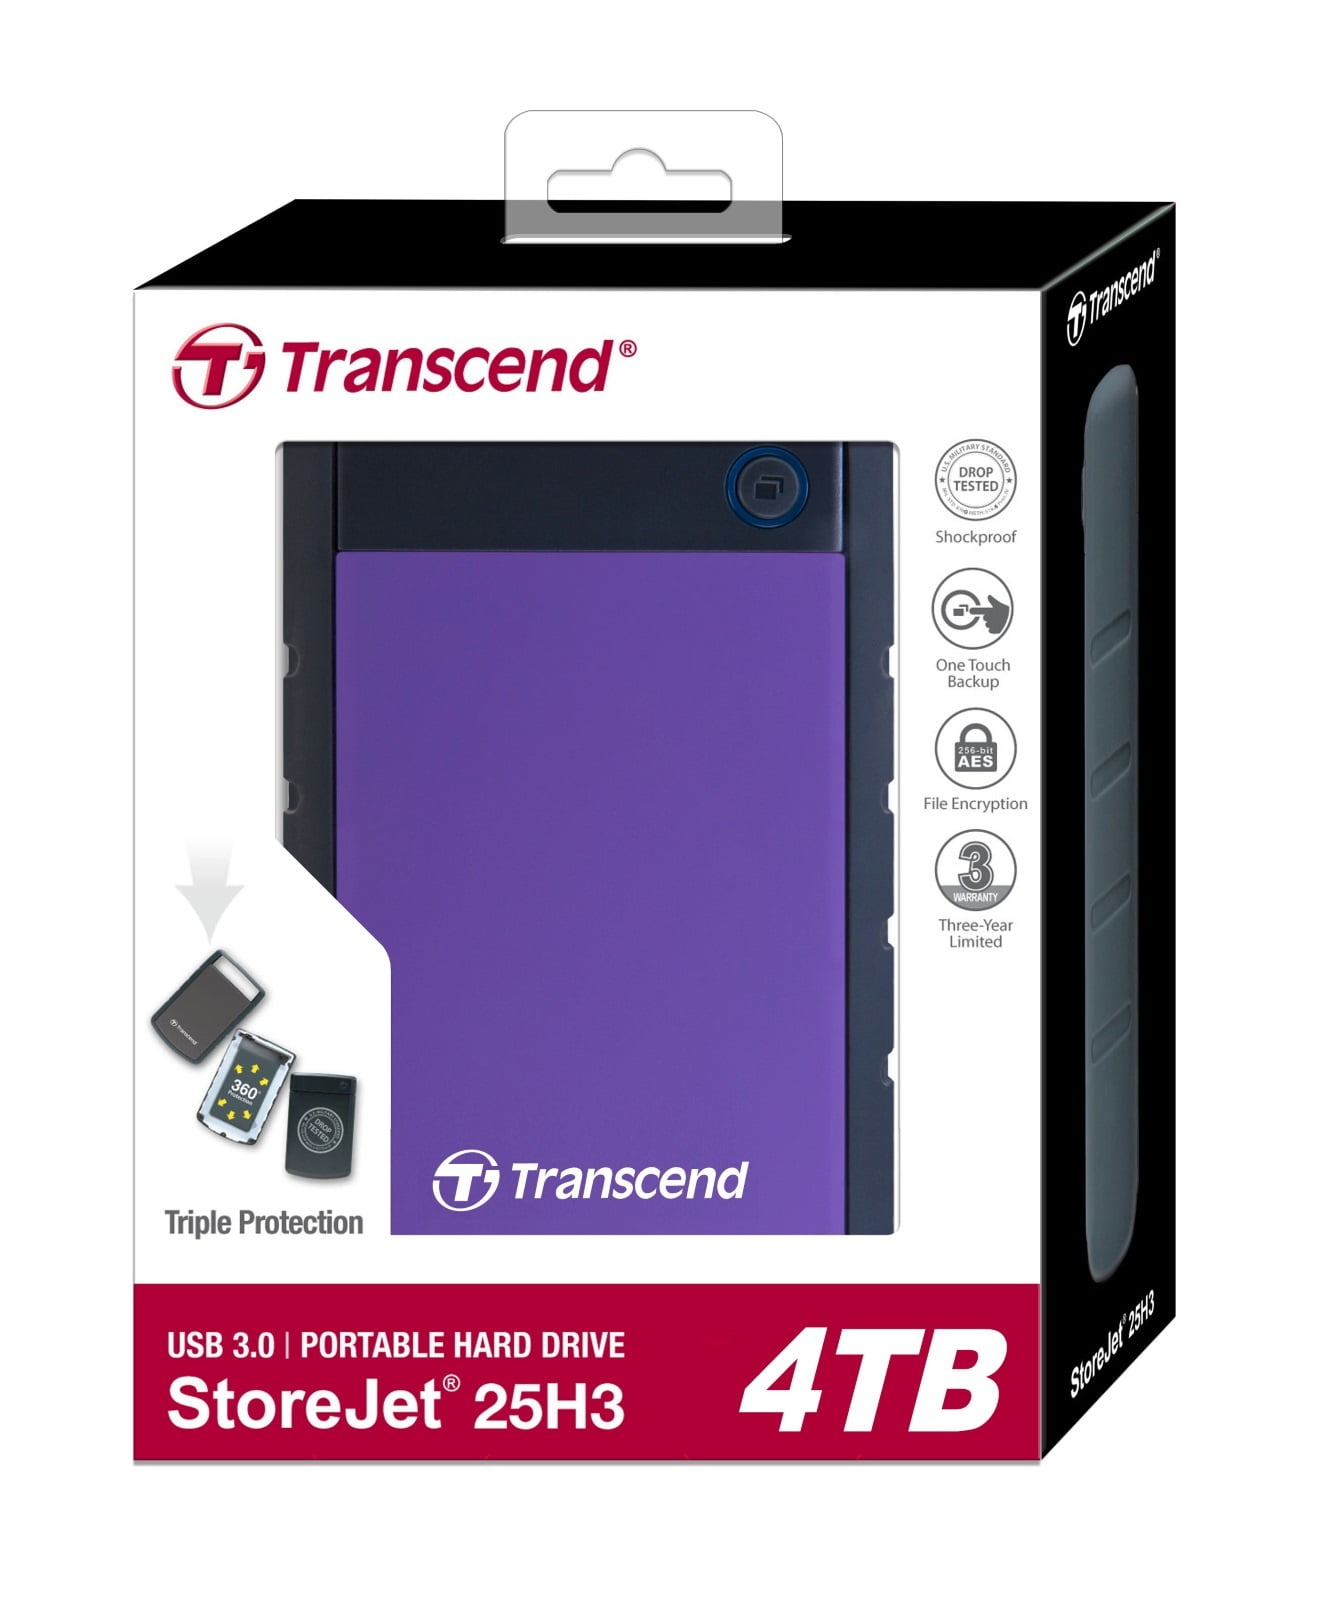 4 TB Transend HDD